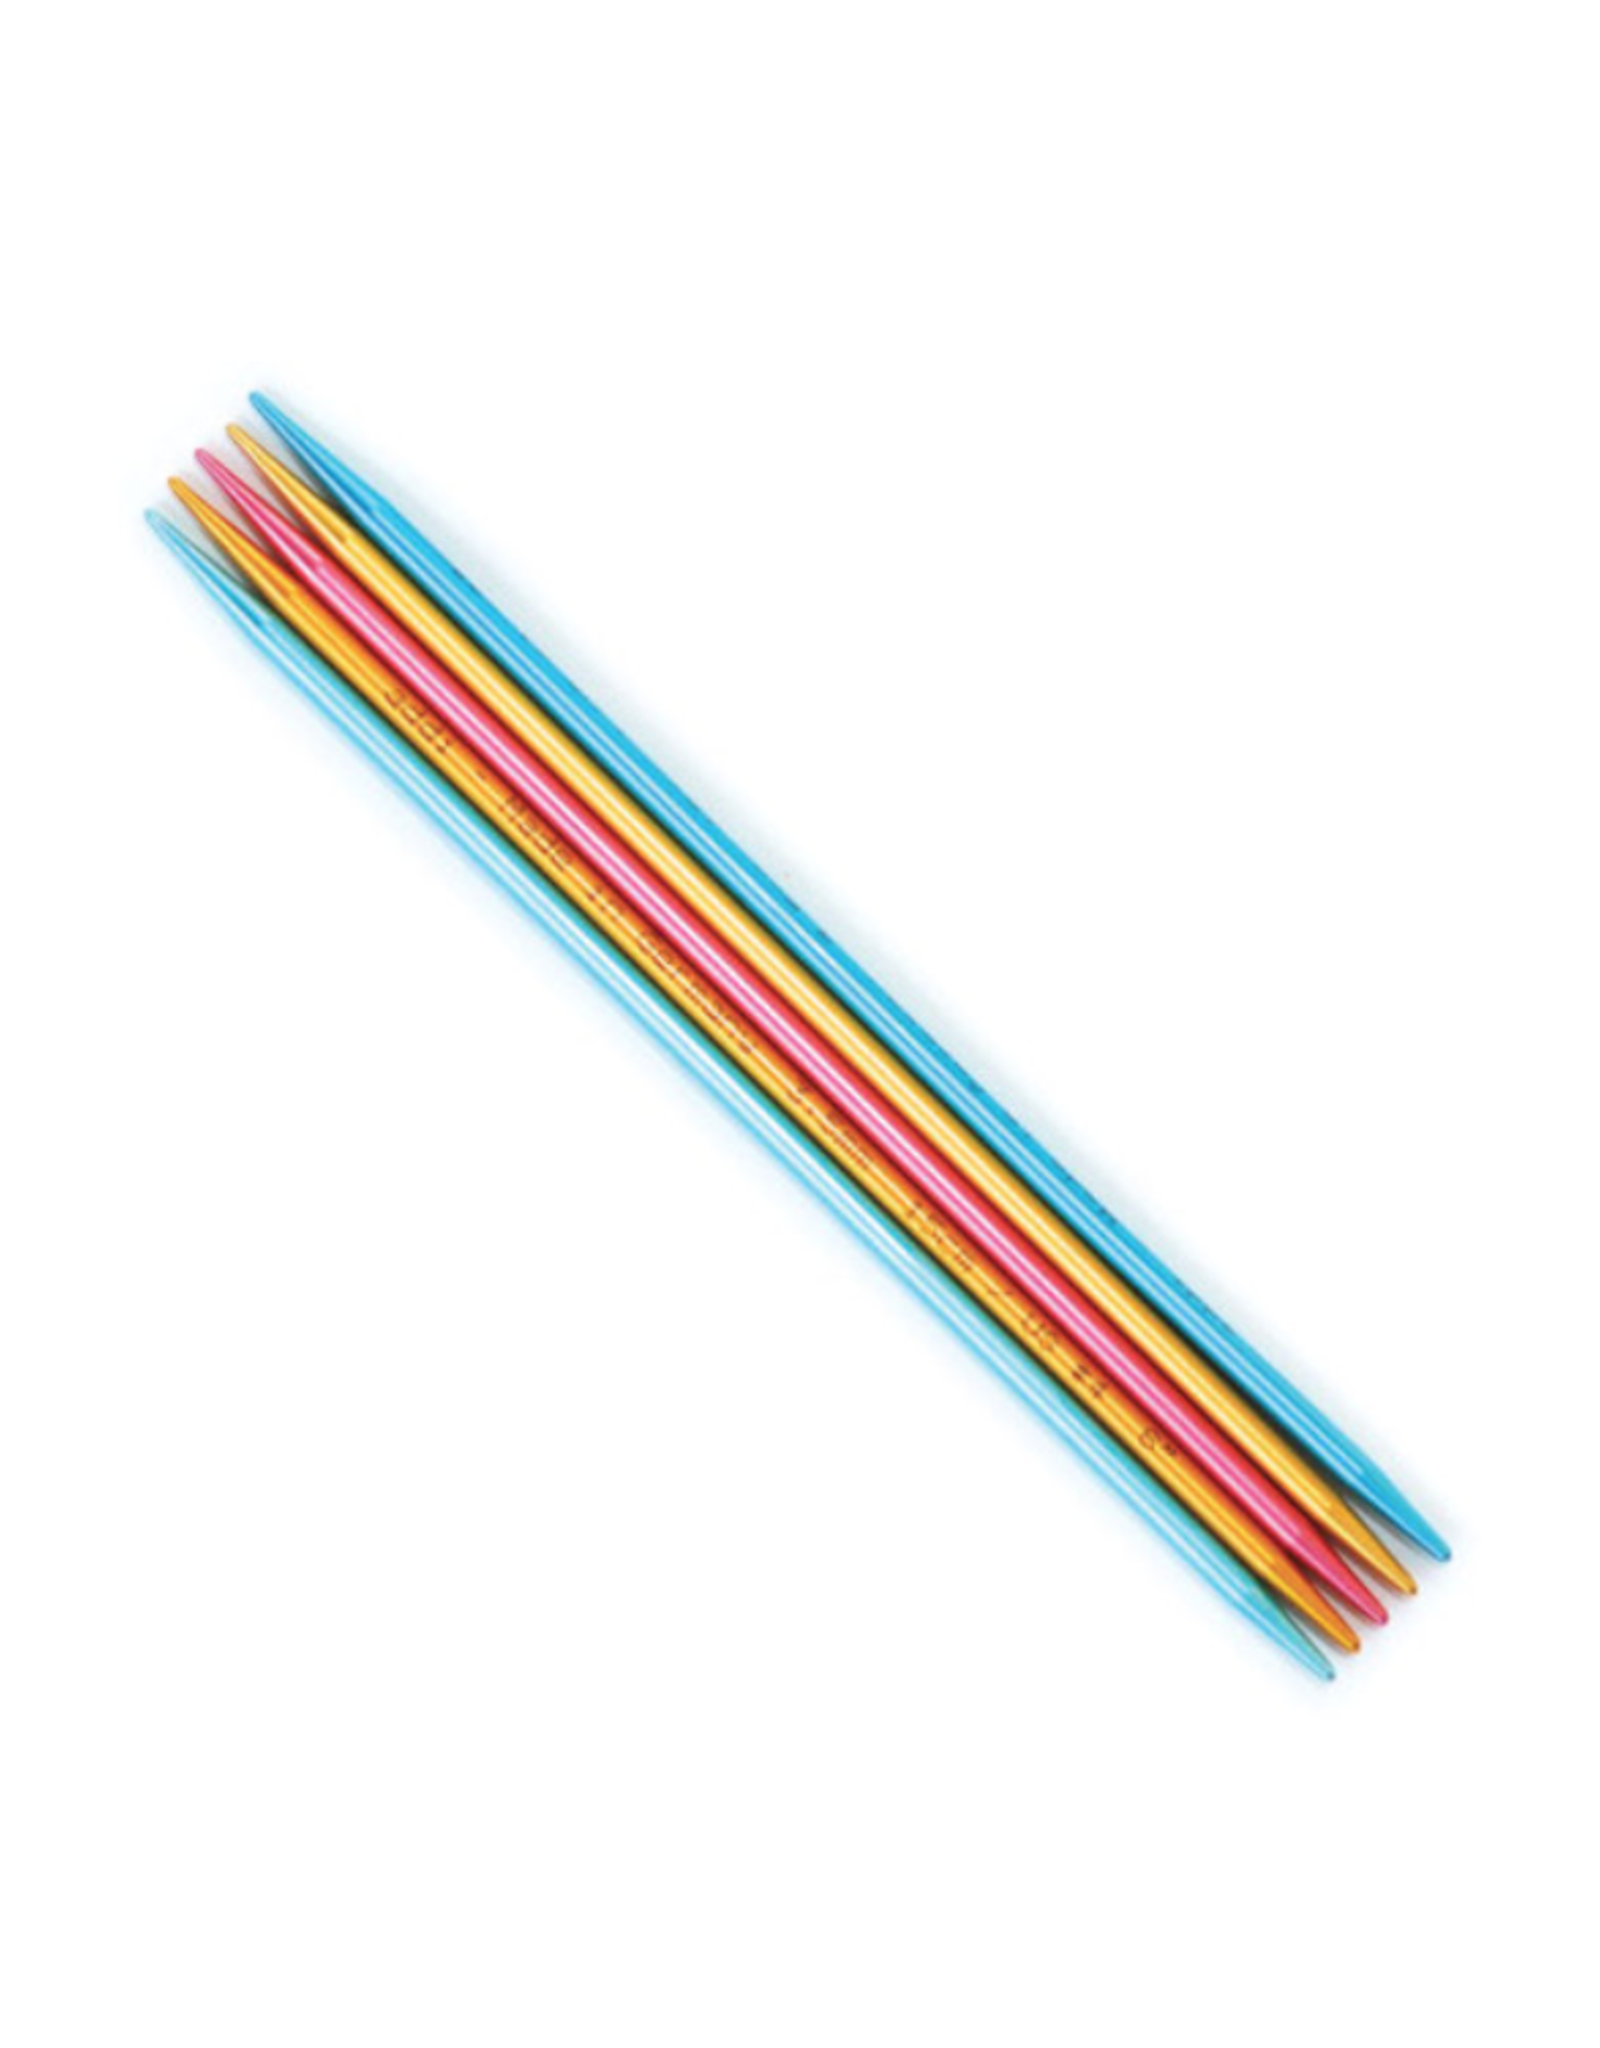 Addi Flipstix 6" long double pointed needle, size US 2